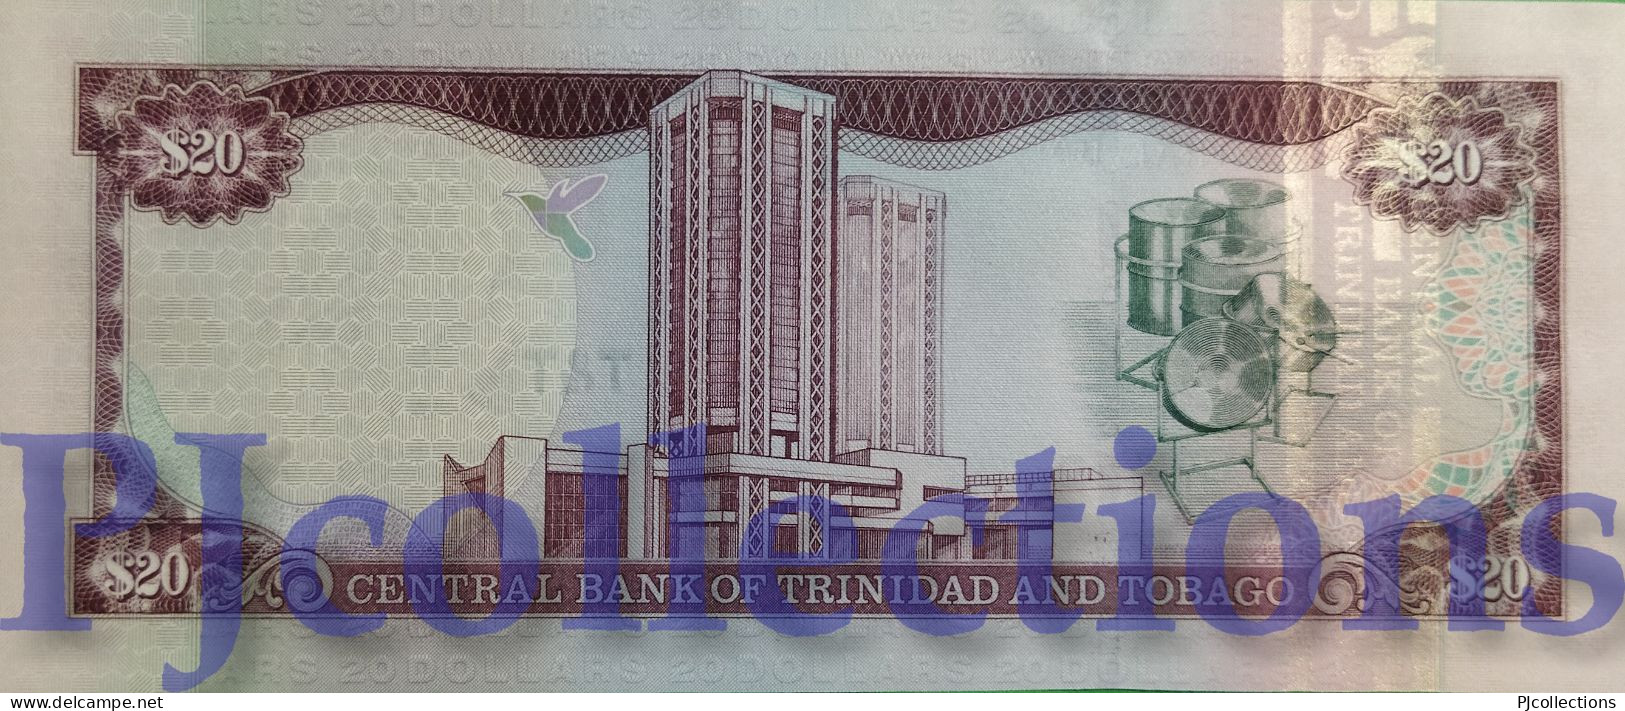 TRINIDAD & TOBAGO 20 DOLLARS 2002 PICK 44a UNC - Trinidad Y Tobago